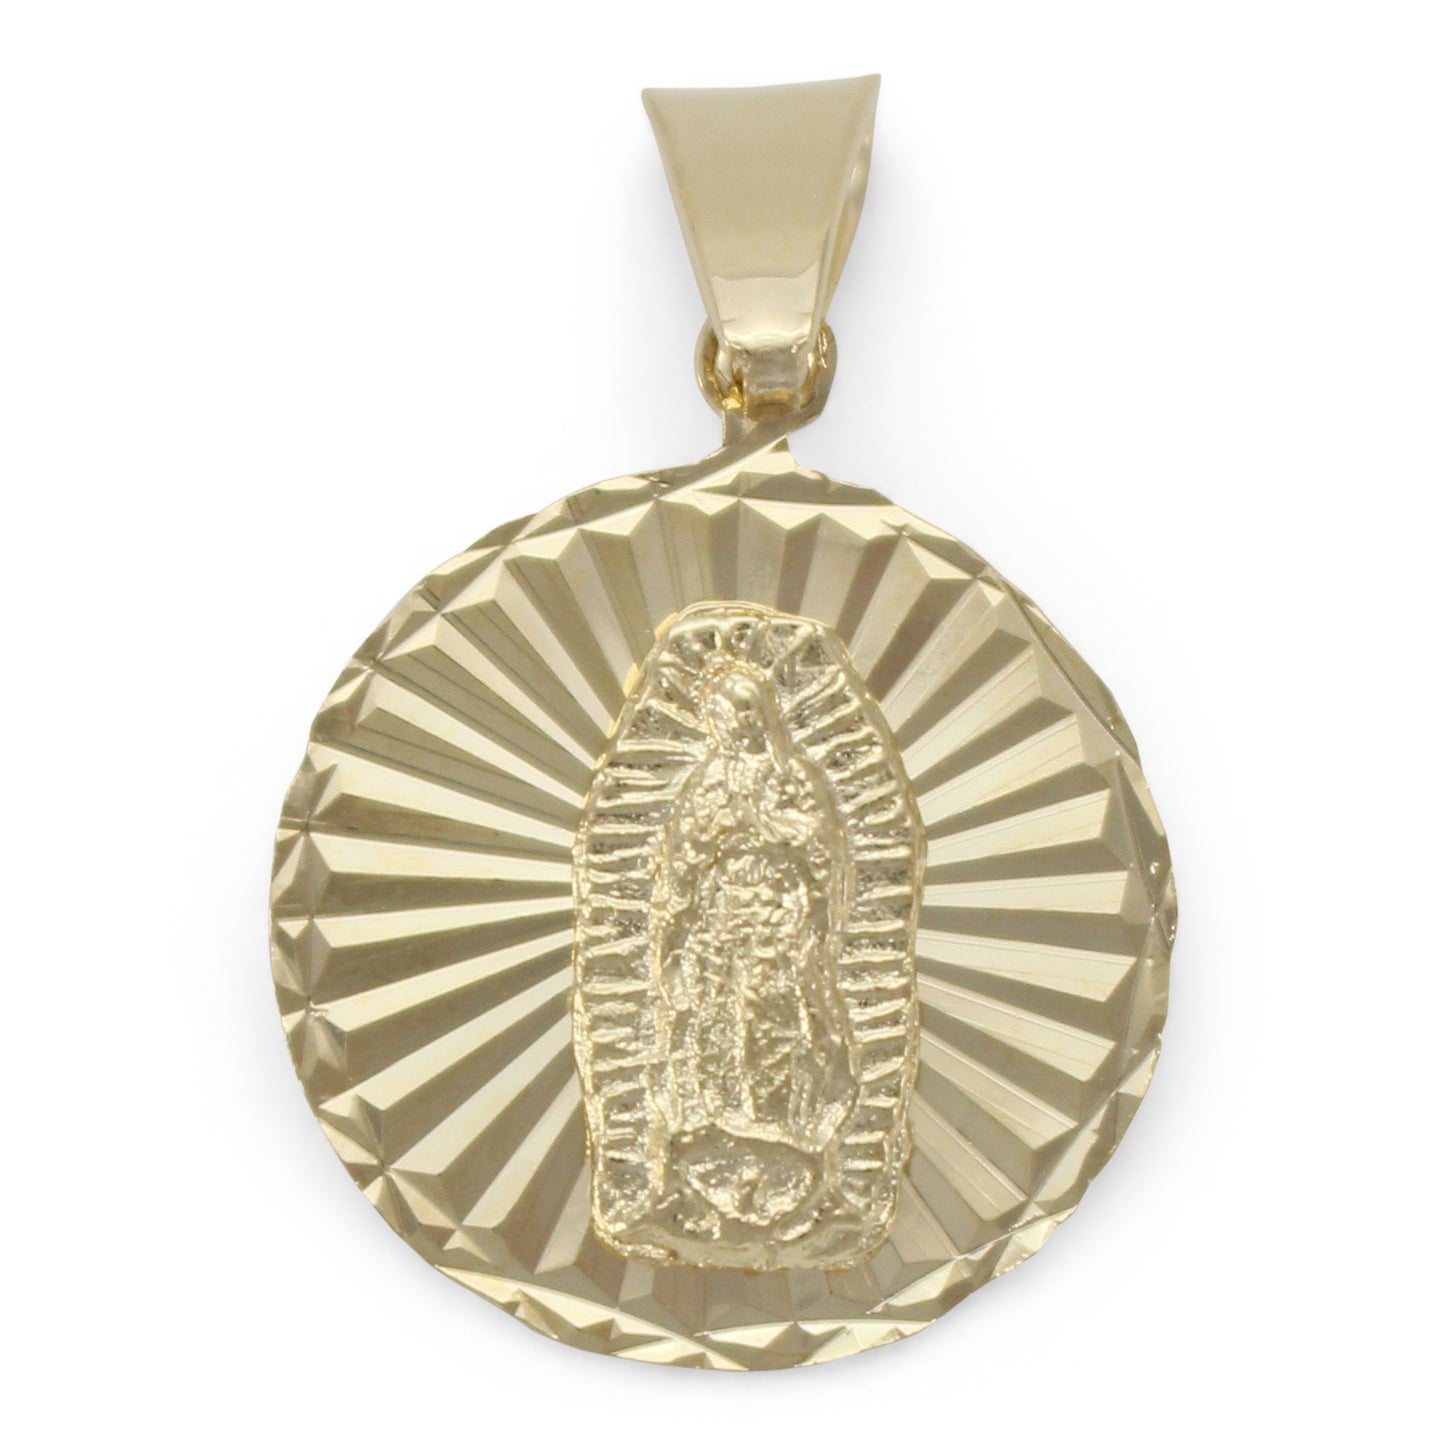 Medalla Virgen de Guadalupe circular en chapa de oro 14K